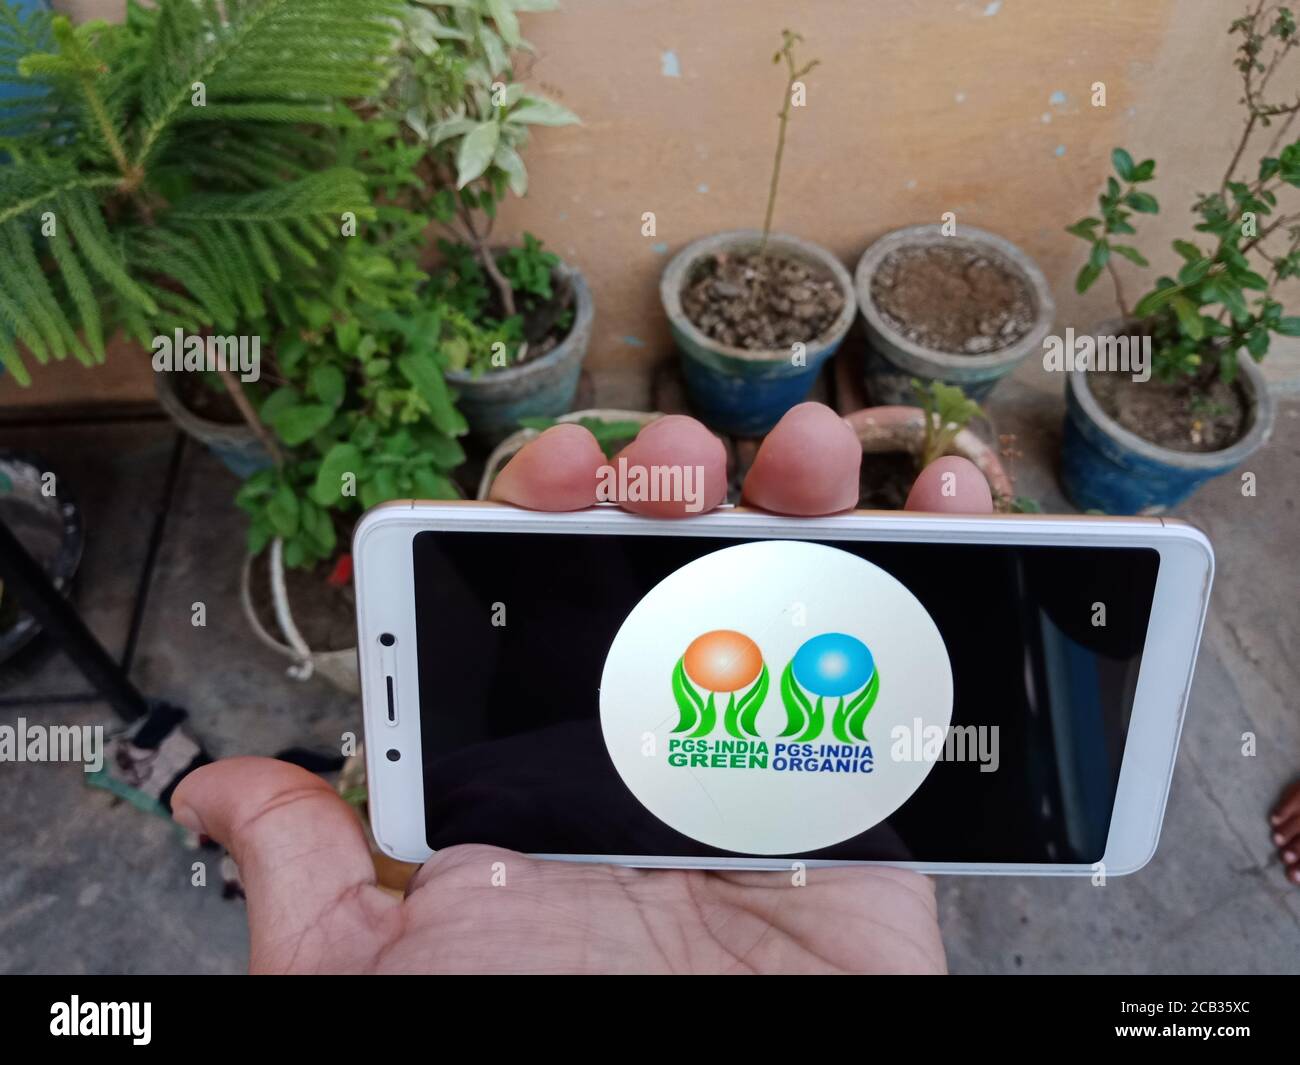 DISTRETTO KATNI, INDIA - 23 MAGGIO 2020: Donna che tiene smartphone con visualizzazione PGS india verde Pgs india logo organico sullo schermo. Governo indiano rul Foto Stock